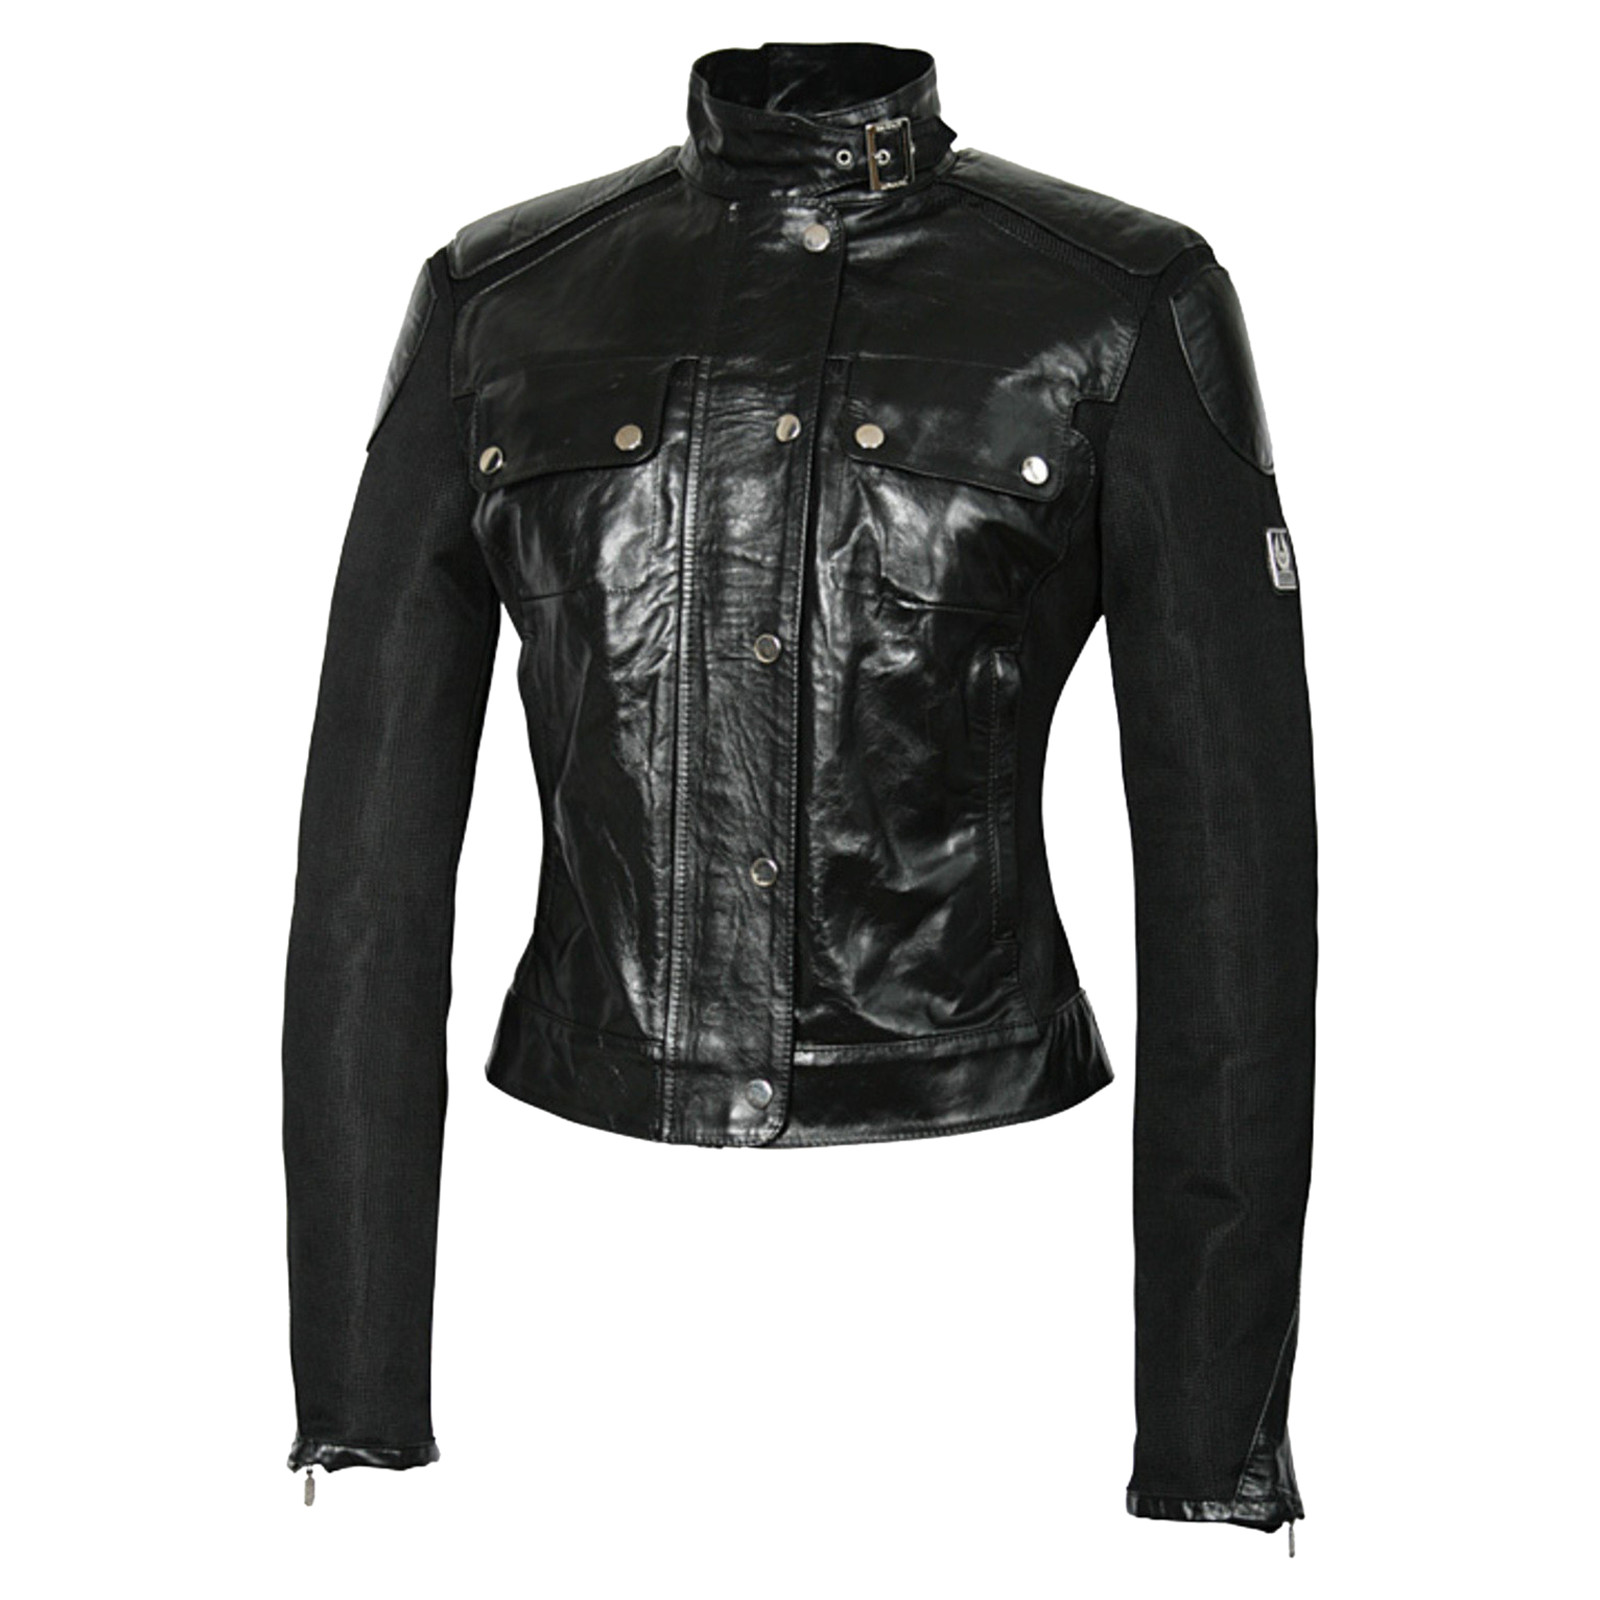 Ciencias Contemporáneo Prescribir BELSTAFF Women's Jacket/Coat Leather in Black Size: IT 46